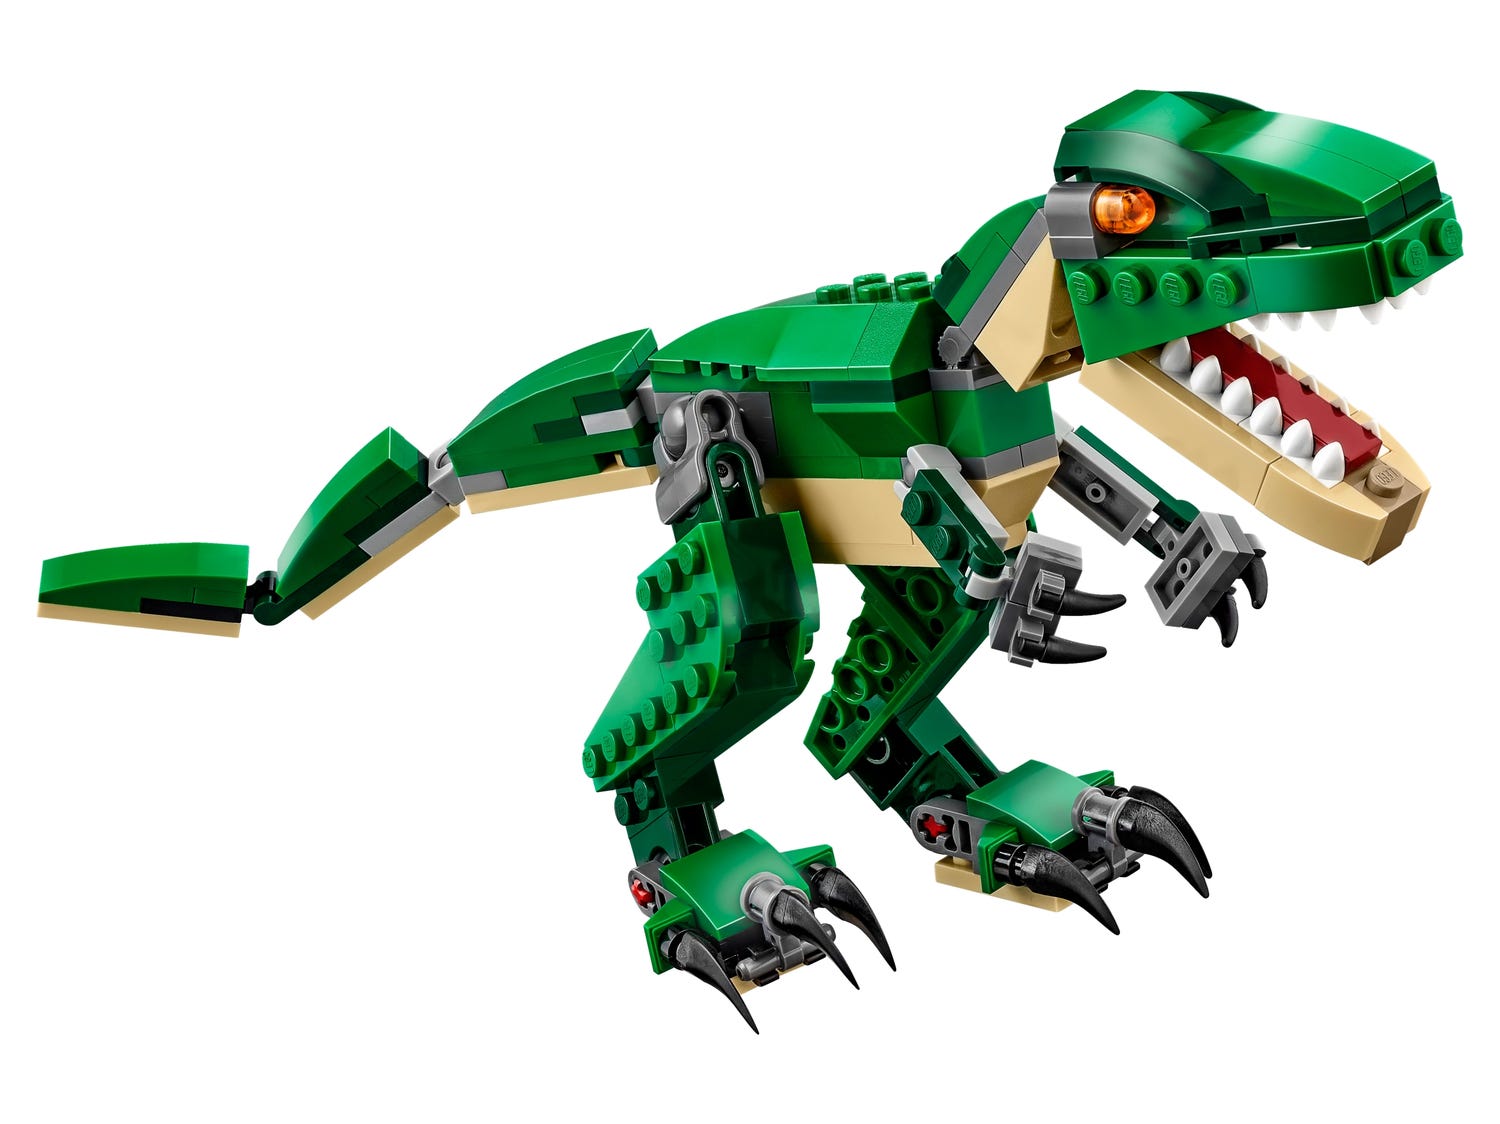 bleg Alfabetisk orden Ødelæggelse Mighty Dinosaurs 31058 | Creator 3-in-1 | Buy online at the Official LEGO®  Shop US